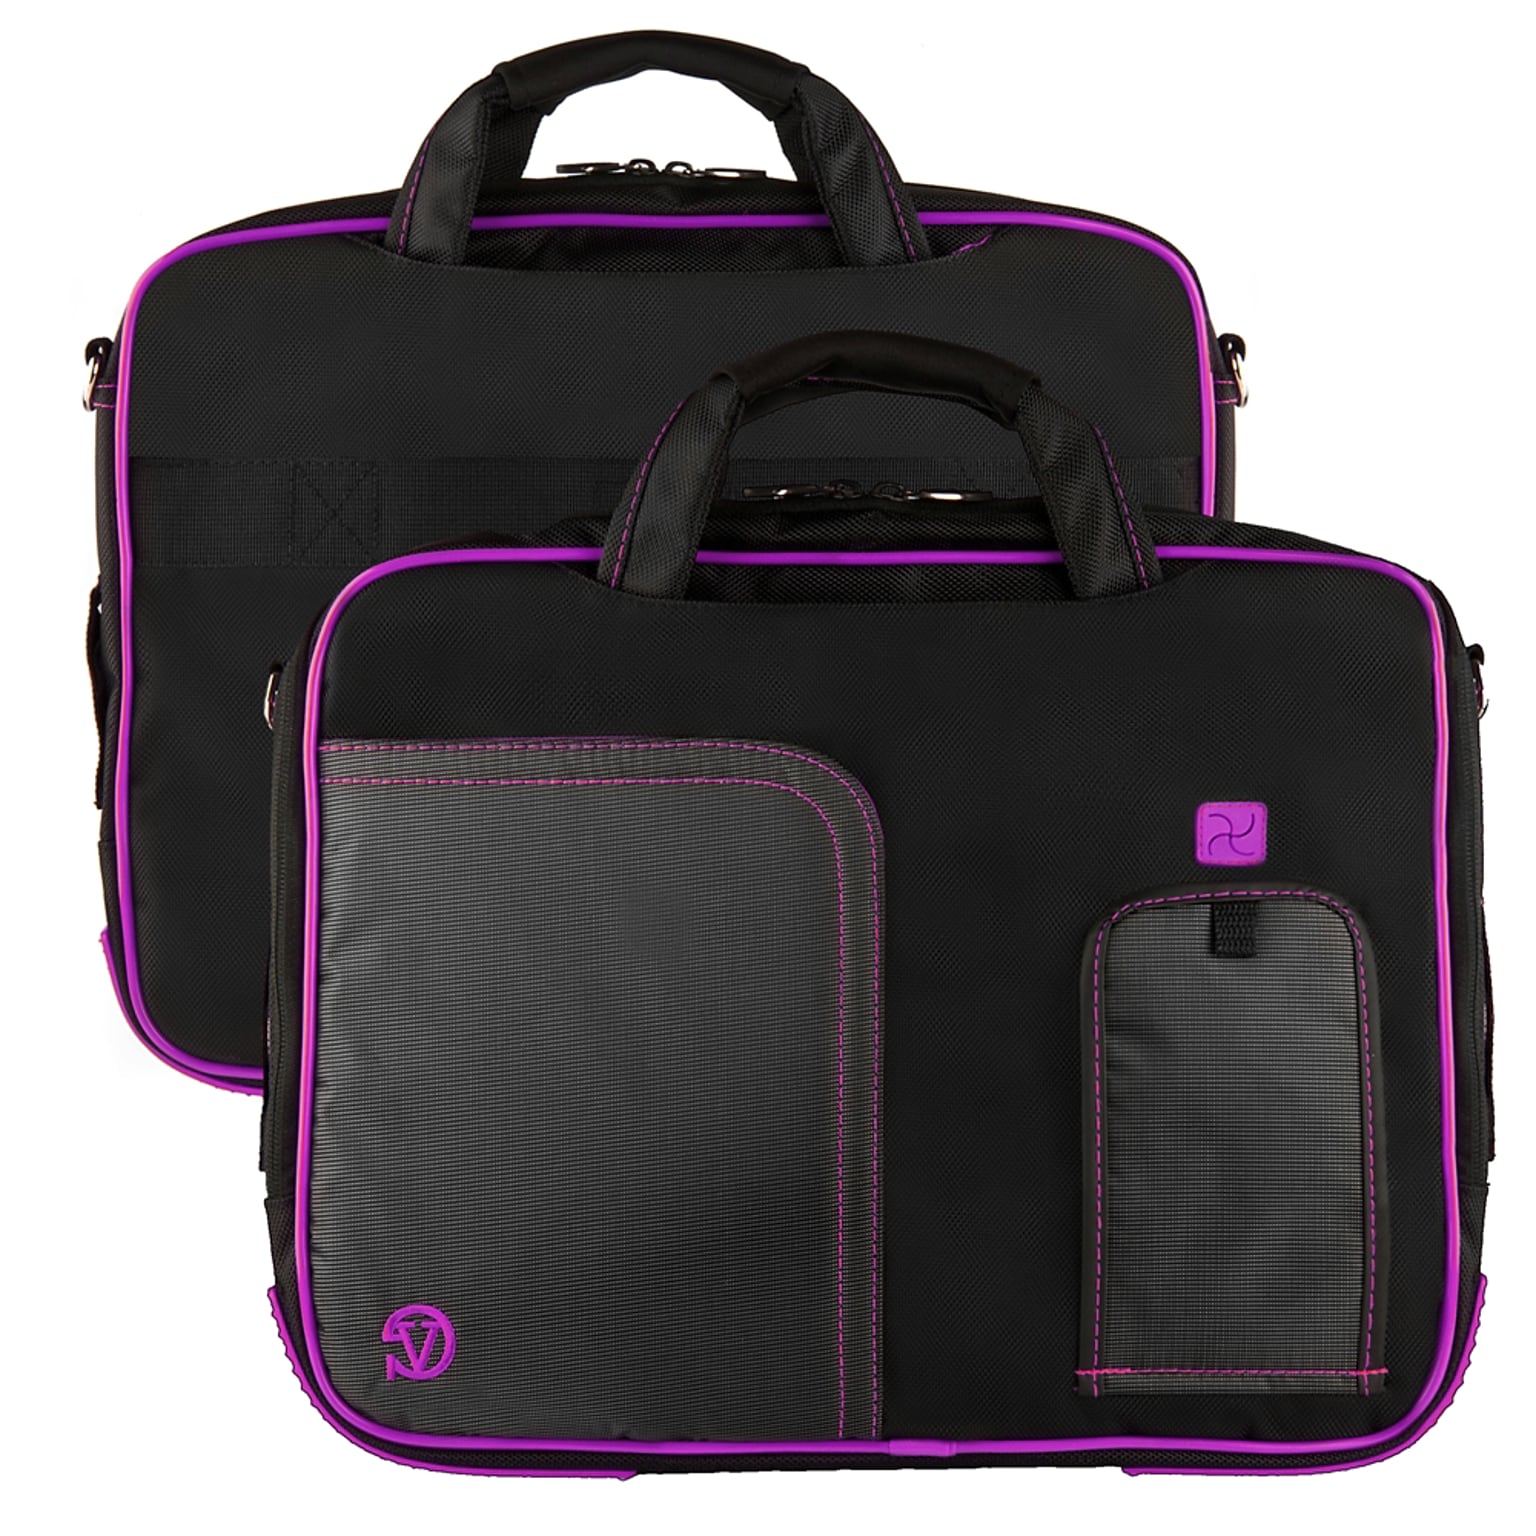 Vangoddy Pindar Laptop Sleeve Messenger Shoulder Bag Fits up to 13 Laptops - Medium (Black and Purple)